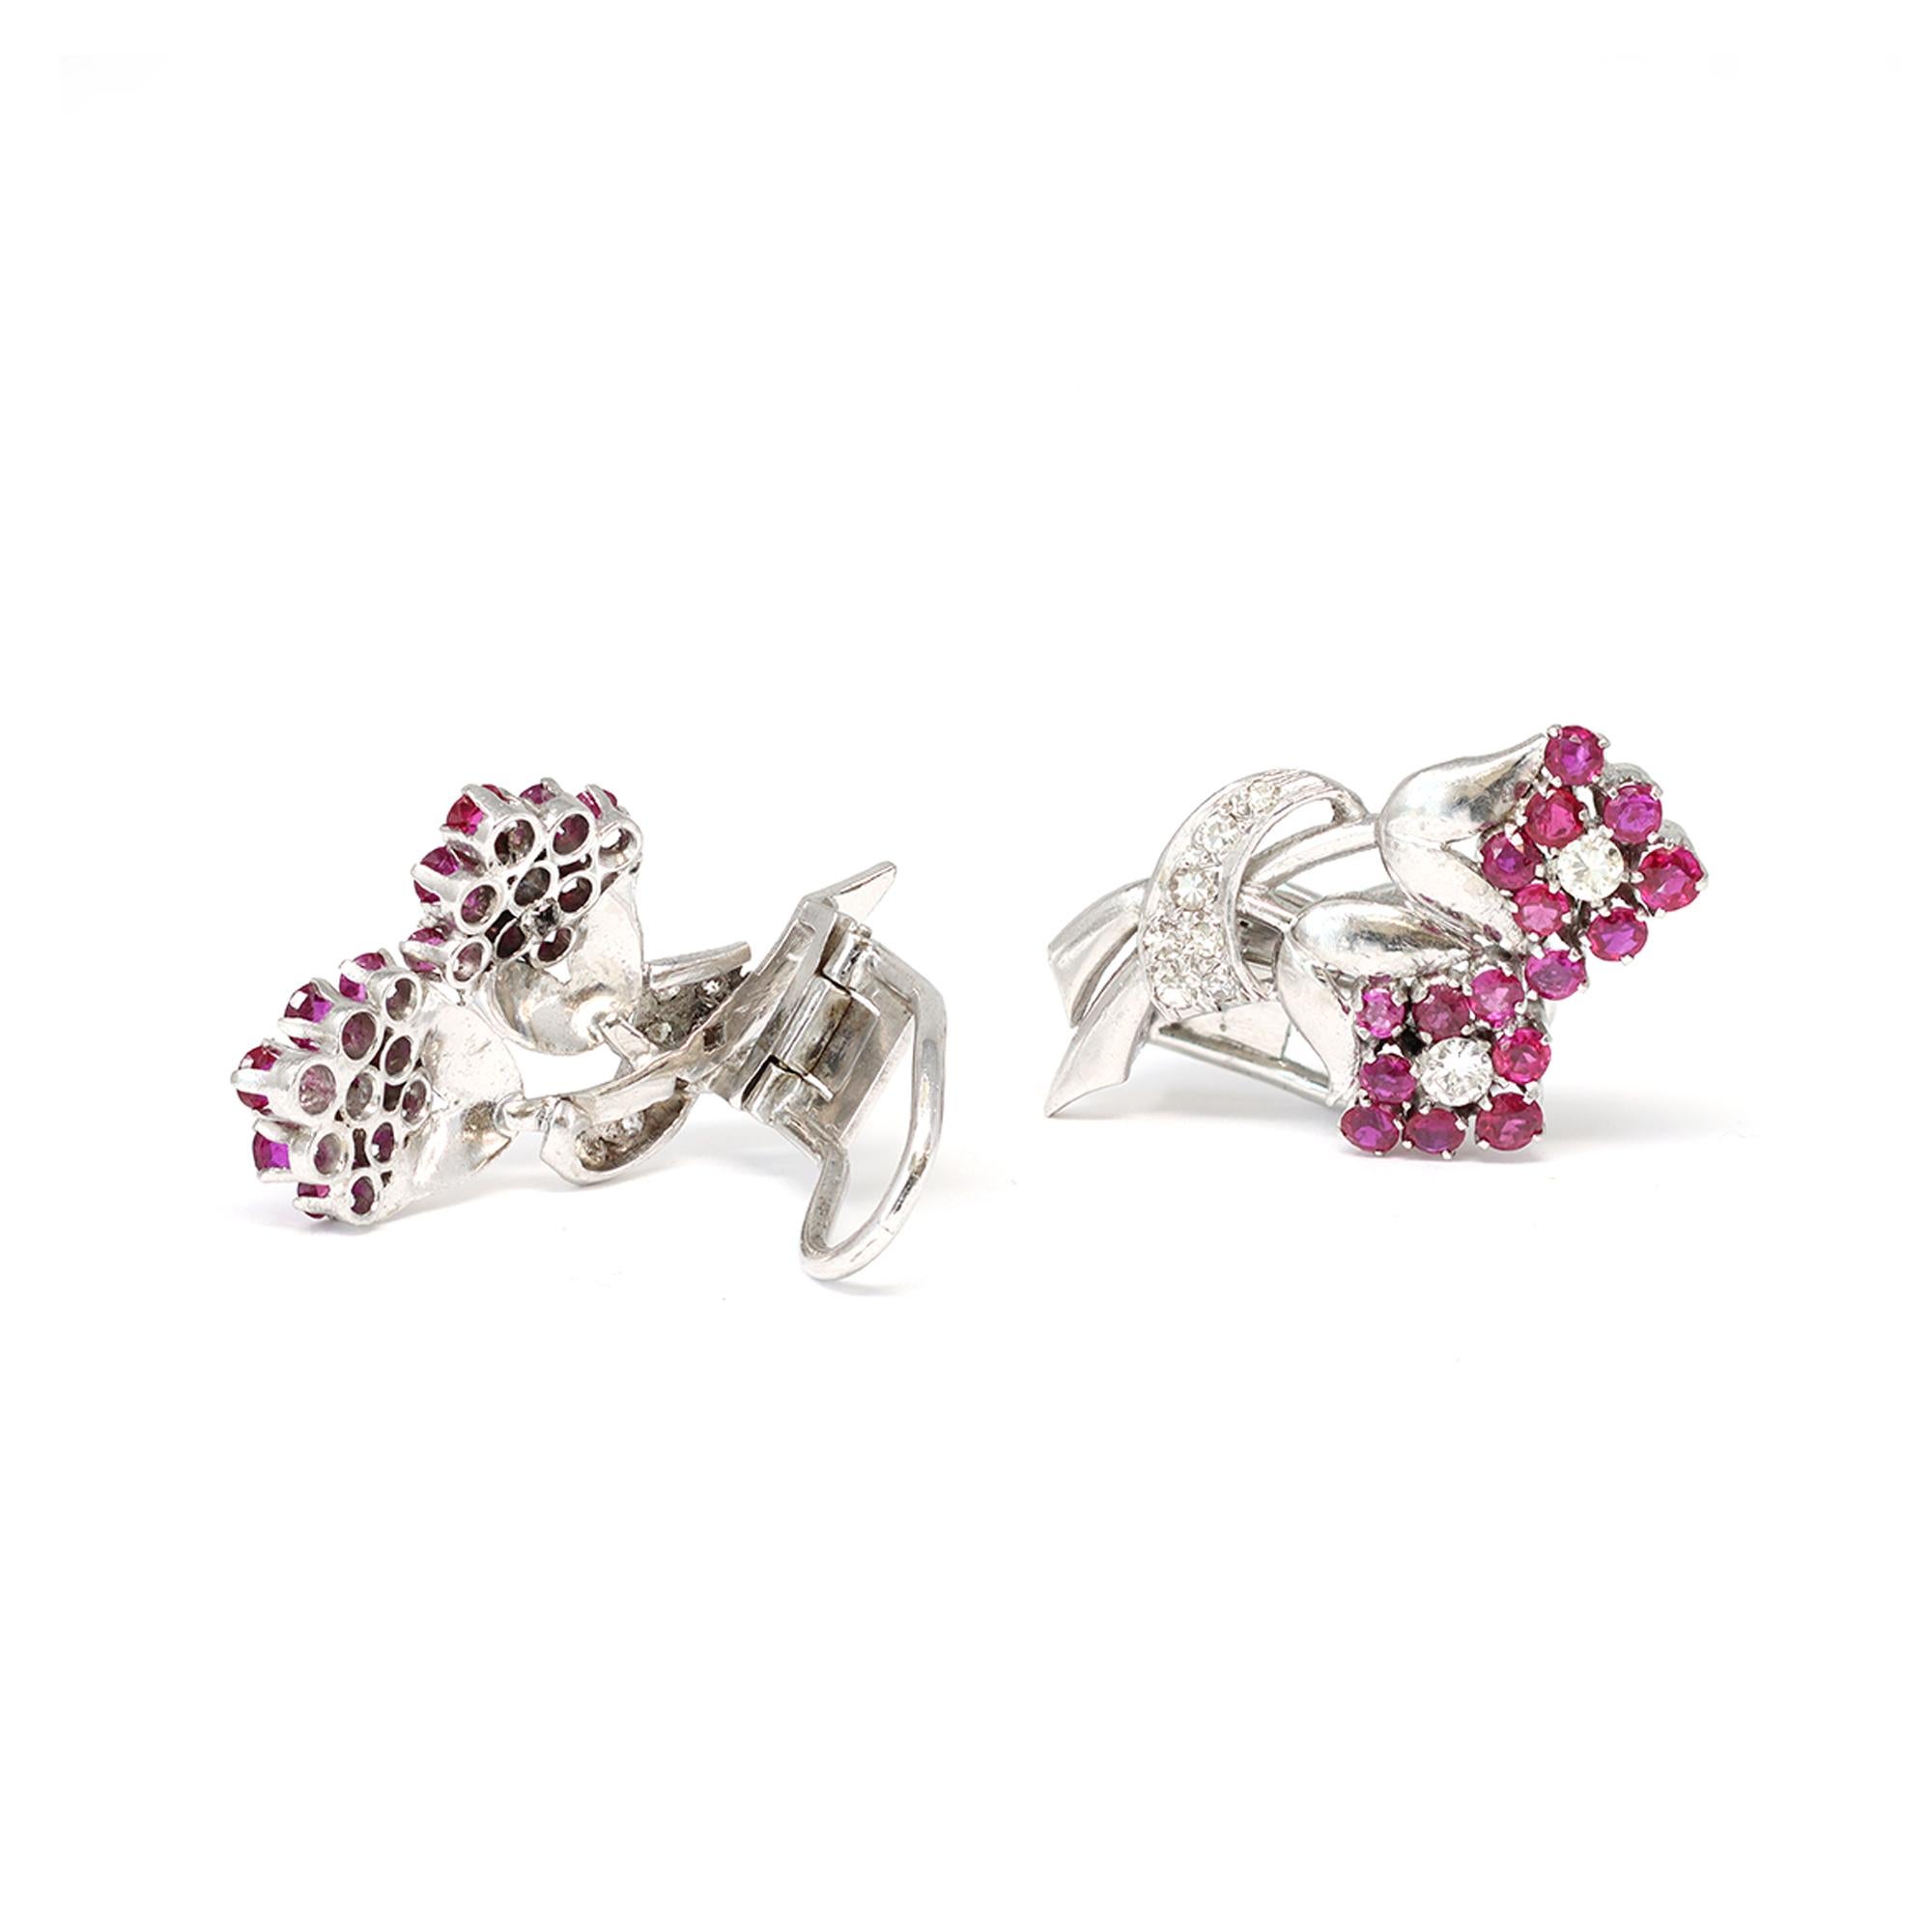 Elegante Clip-Ohrringe um 1950 mit winzigen Blumen aus runden Rubinen und Diamanten. Die aus Platin gefertigten Diamanten haben ein geschätztes Gewicht von 0,70 Karat, Farbe GH und Reinheit VS. Die leuchtend roten Rubine haben ein ungefähres Gewicht